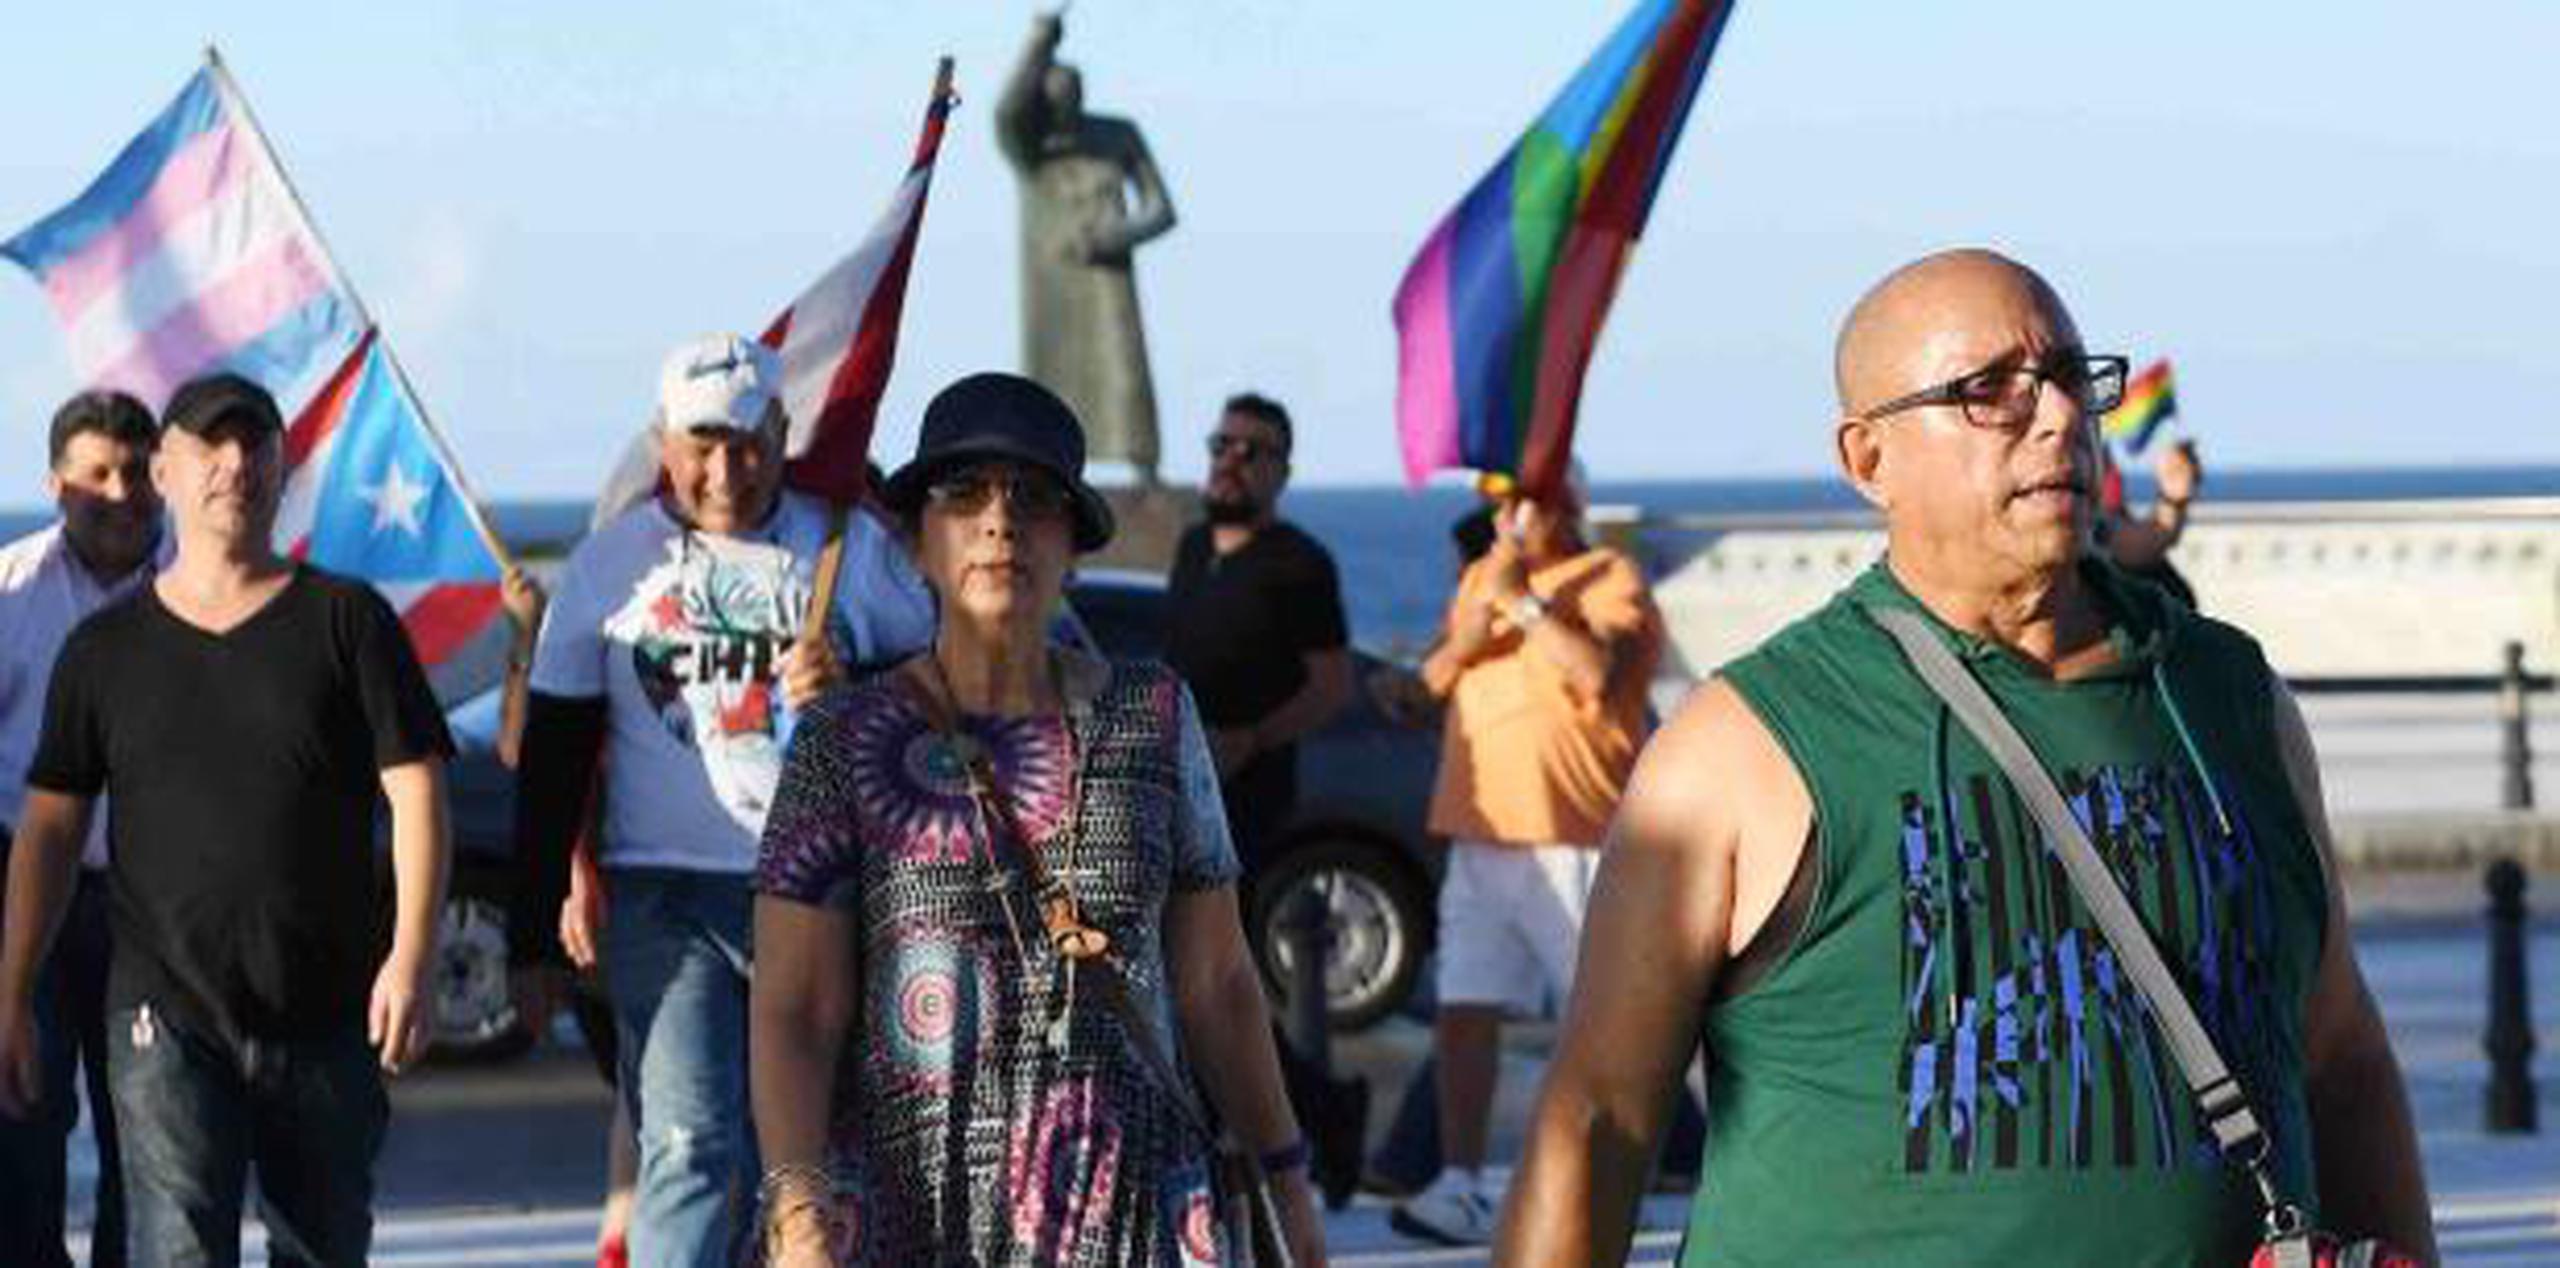 “Dejen de discriminar por mi identidad sexual” fue una de las consignas que se escucharon entre los manifestantes. (luis.alcaladelolmo@gfrmedia.com)